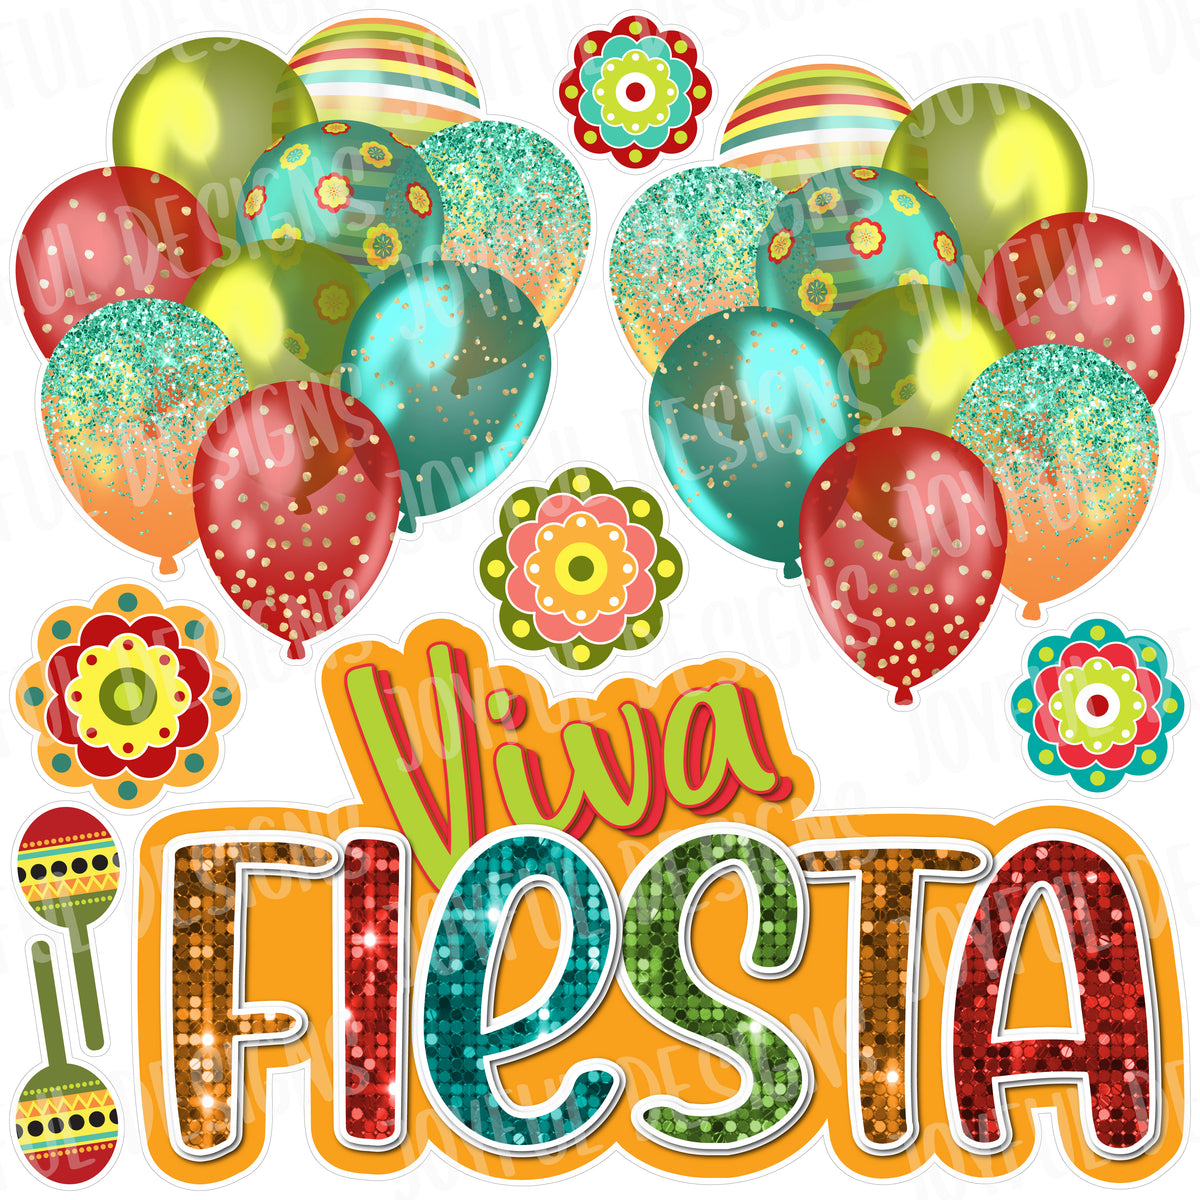 Viva Fiesta Centerpiece and Balloons